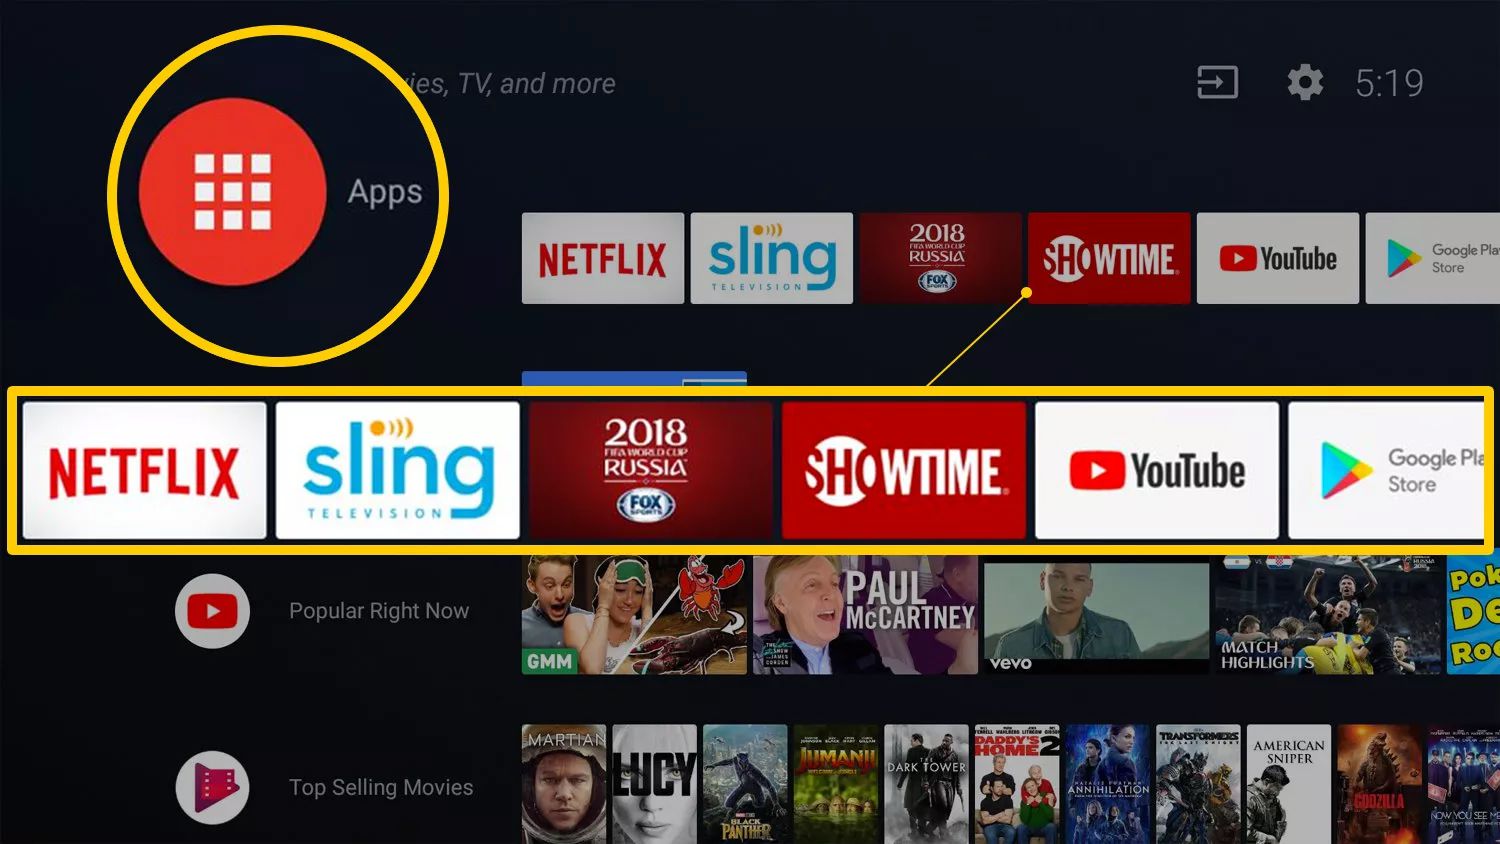 Apps-ikonen och appförslag raden på Android TV